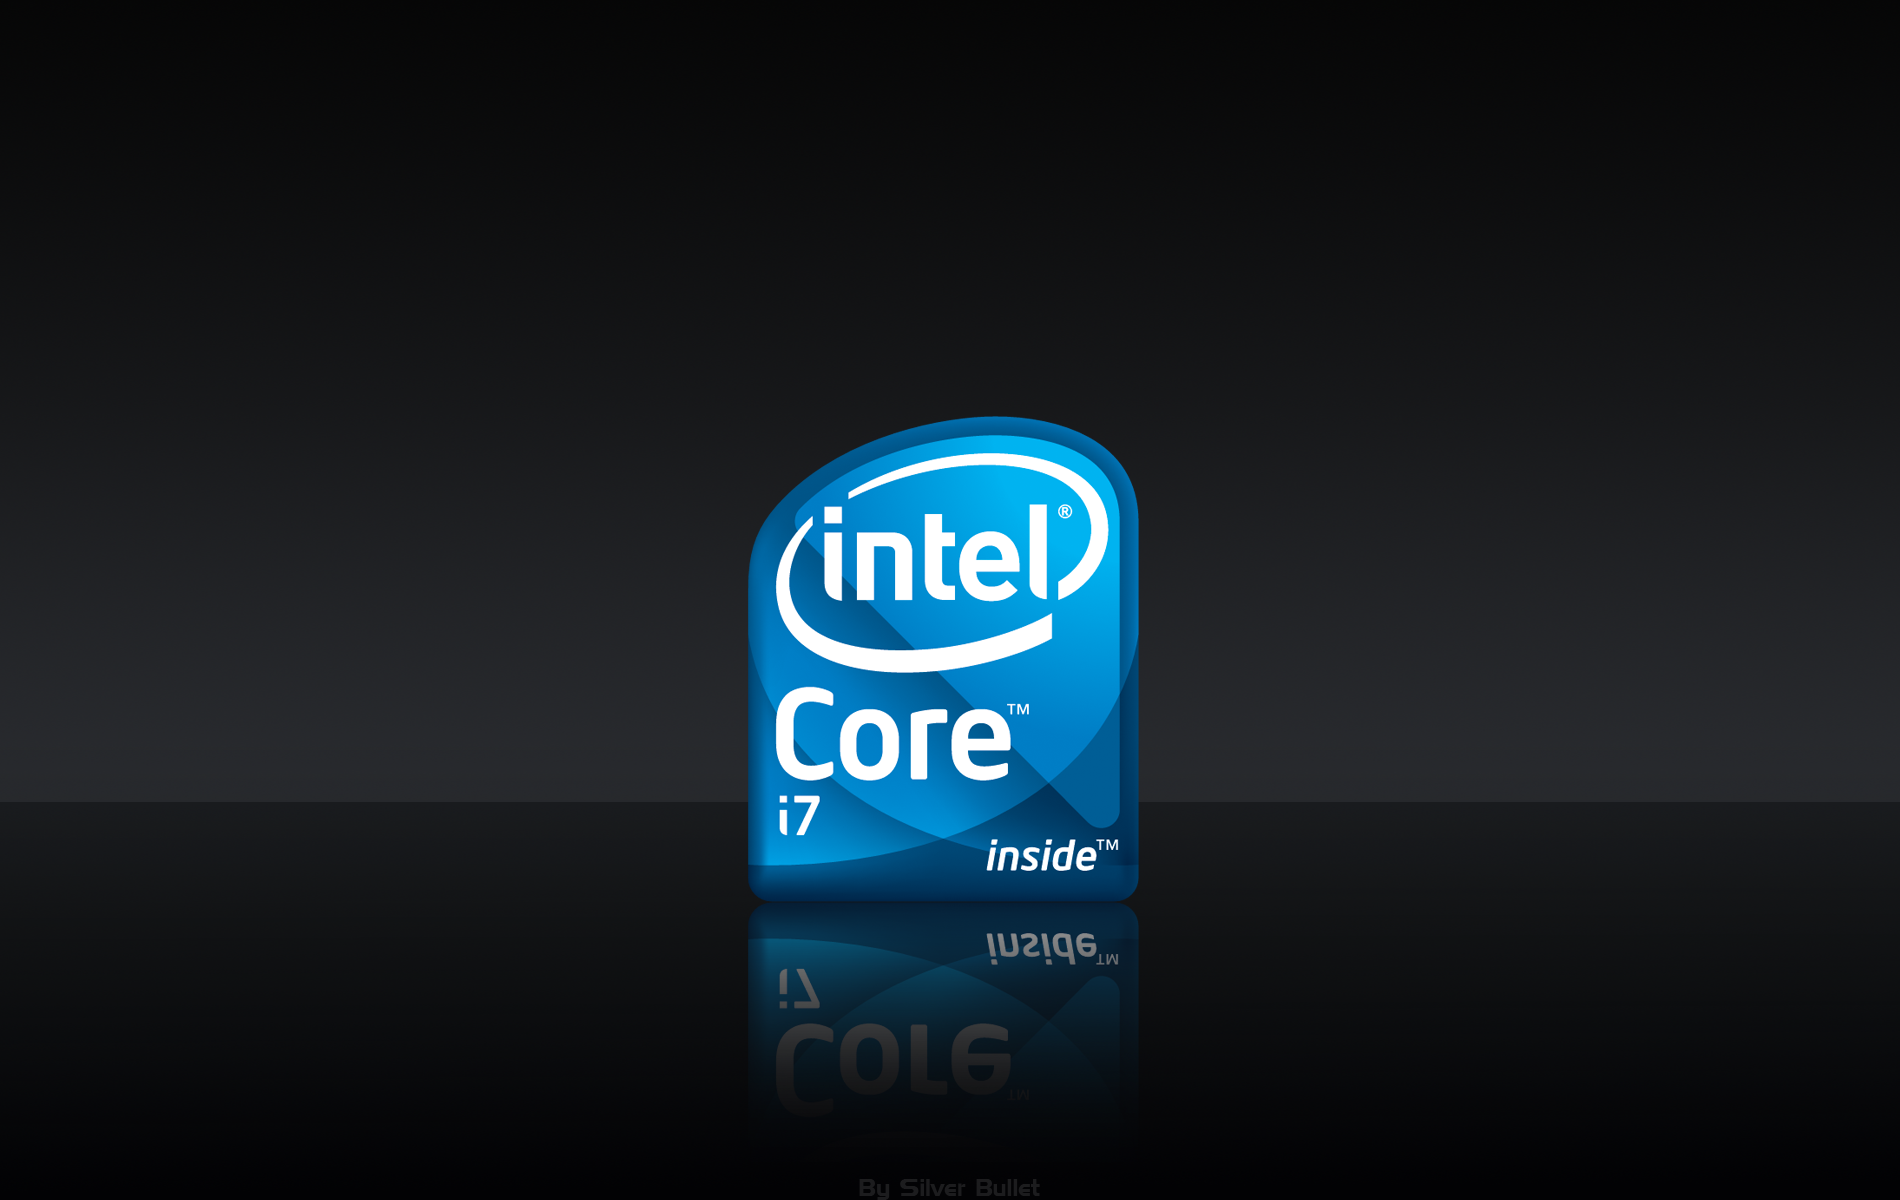 Intel Core I7 Wallpaper